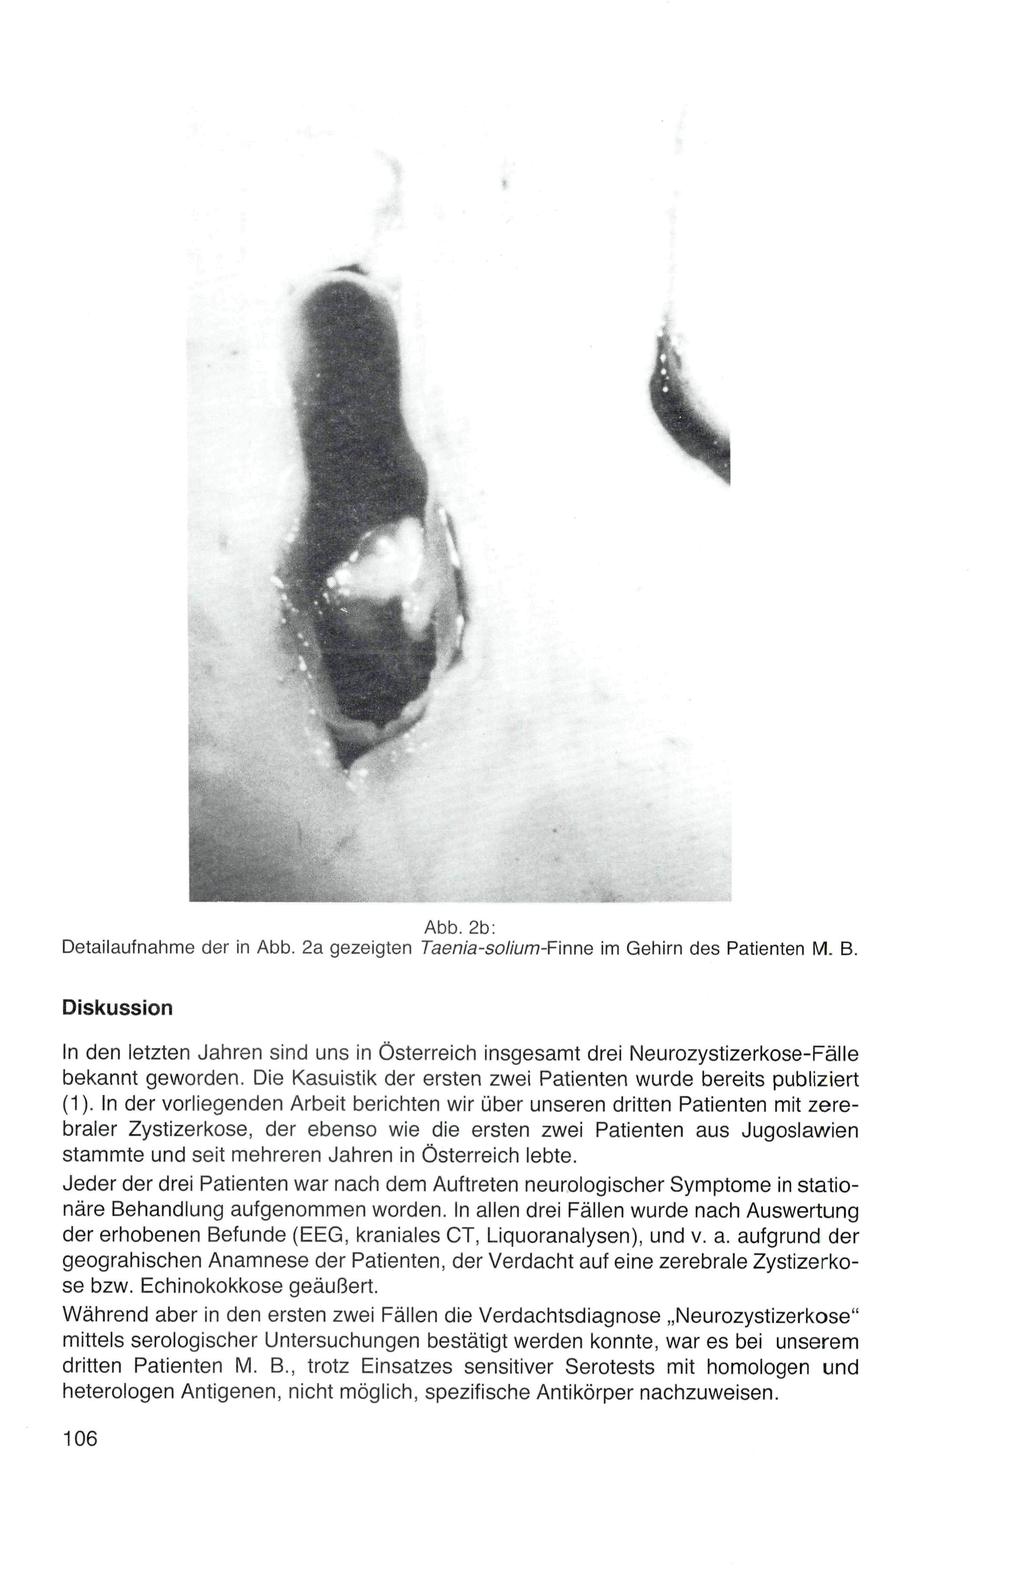 Abb. 2b: Detailaufnahme der in Abb. 2a gezeigten Taenia-solium-Fmne im Gehirn des Patienten M. B.